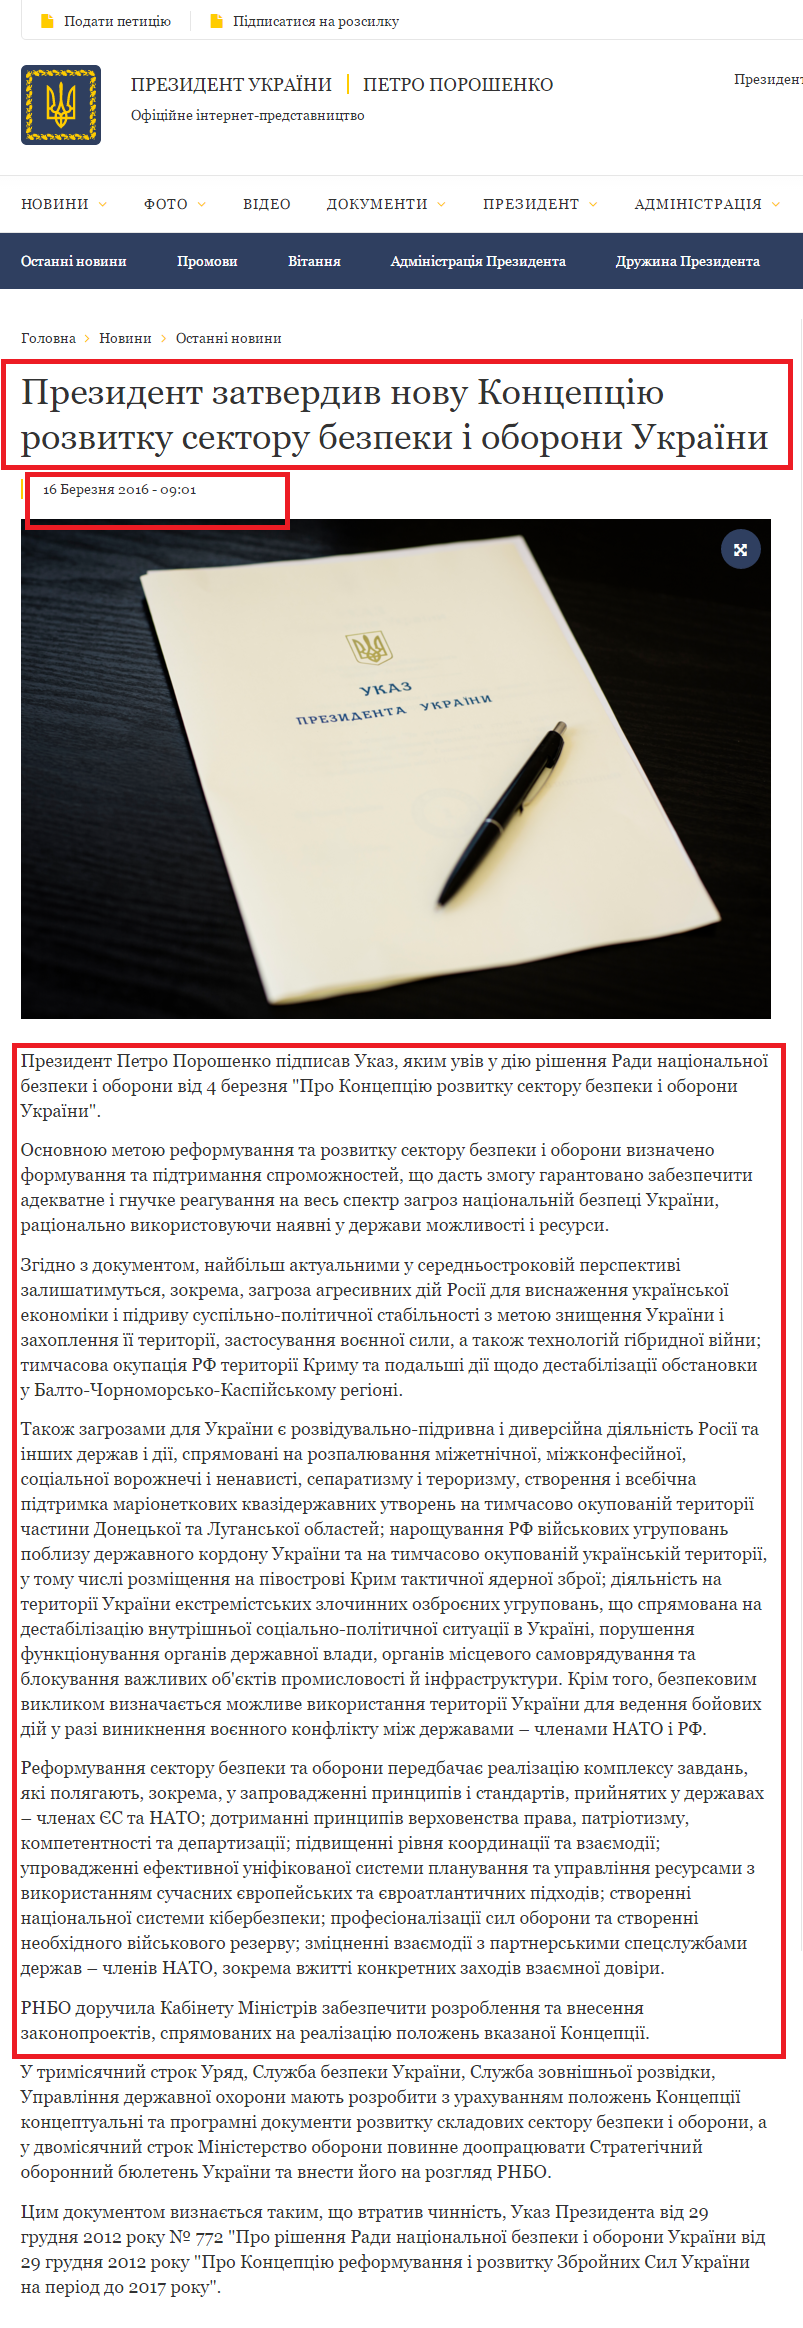 http://www.president.gov.ua/news/prezident-zatverdiv-novu-koncepciyu-rozvitku-sektoru-bezpeki-36854